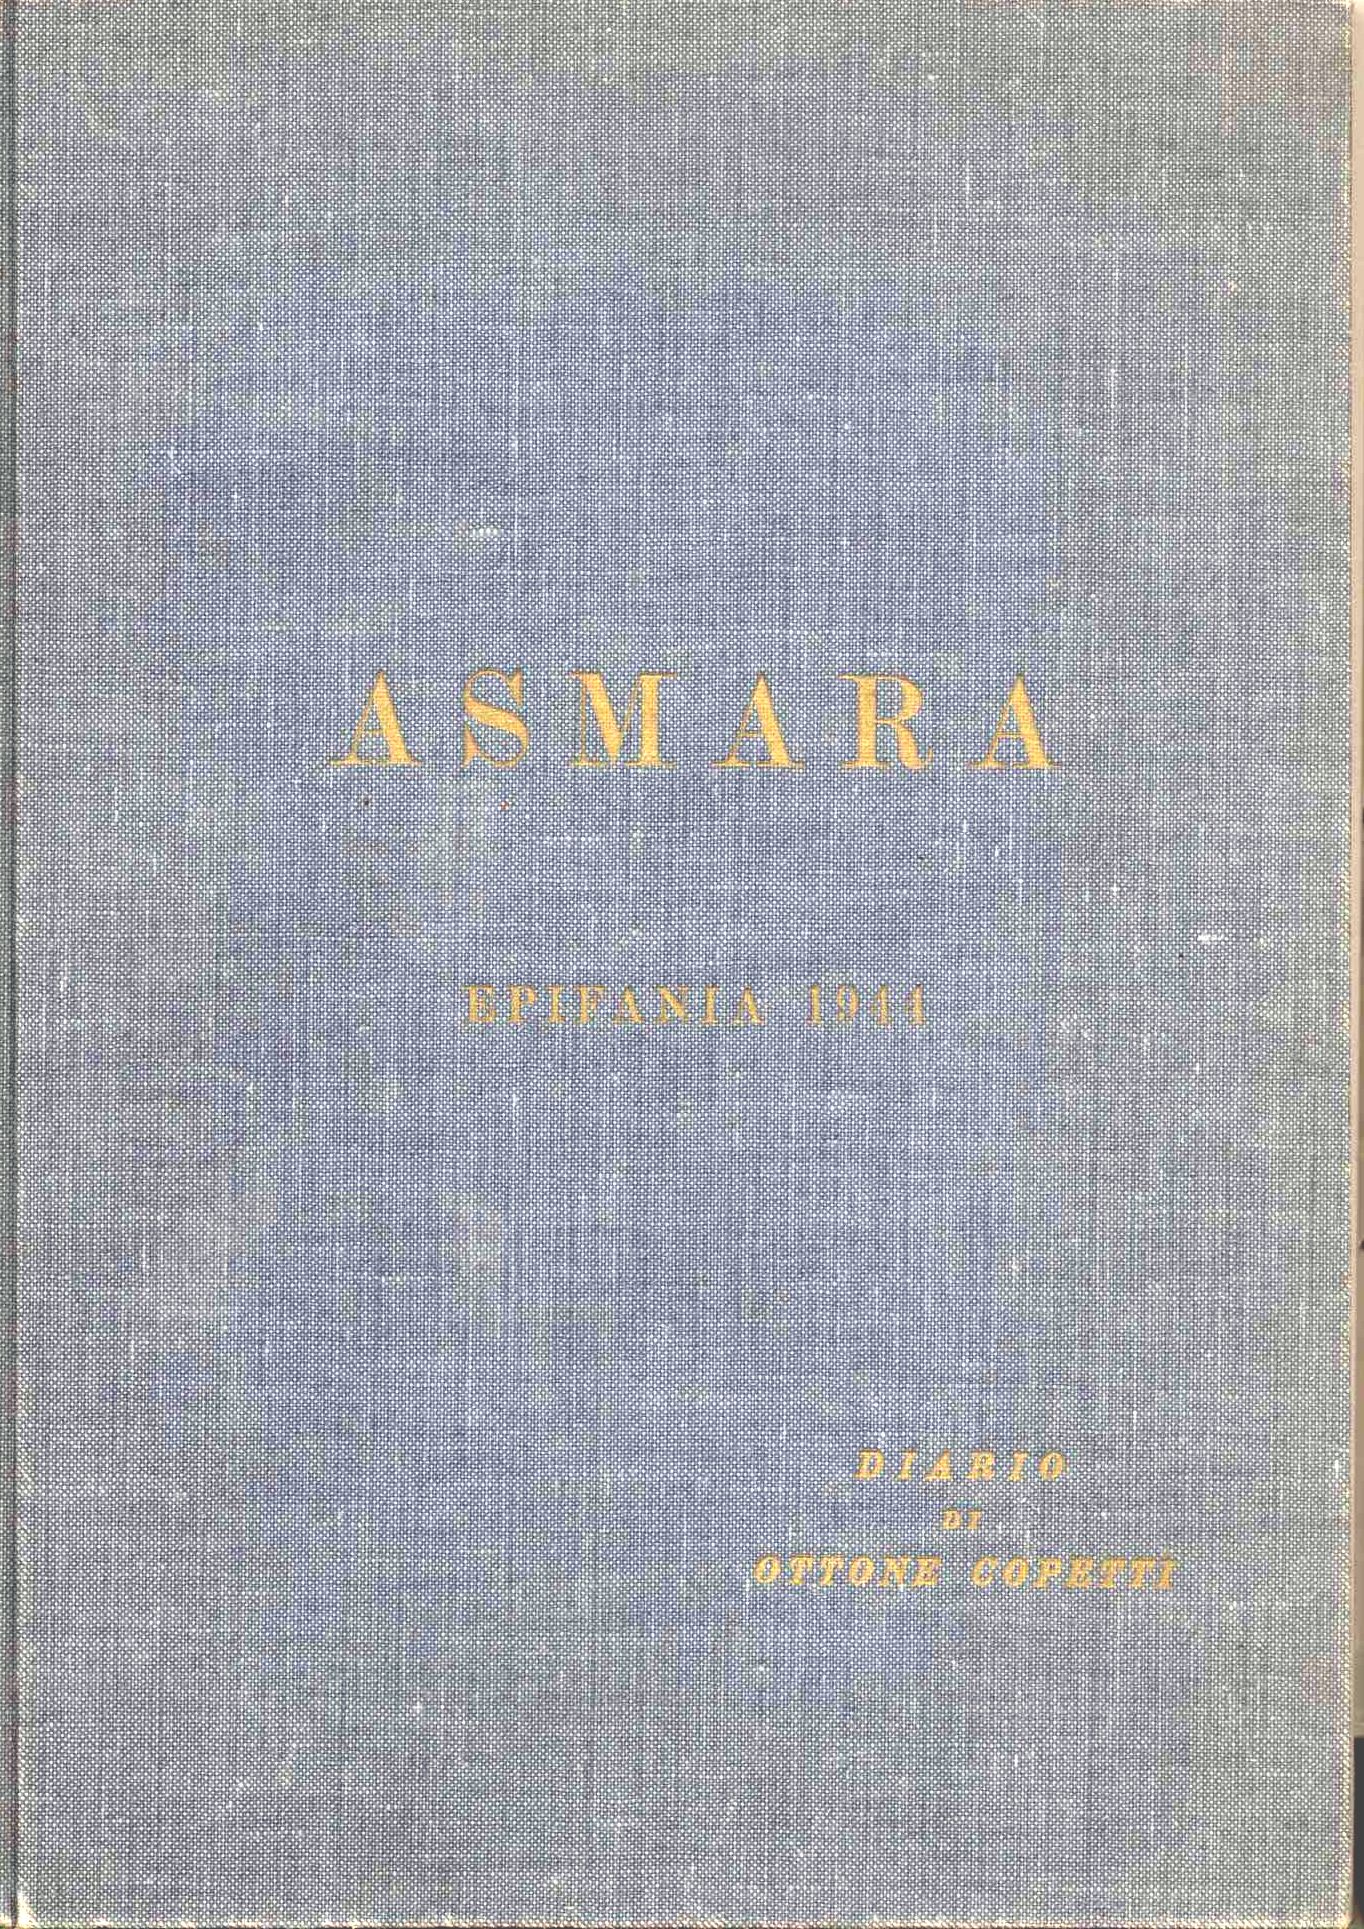 Asmara - epifania 1944 - diario di